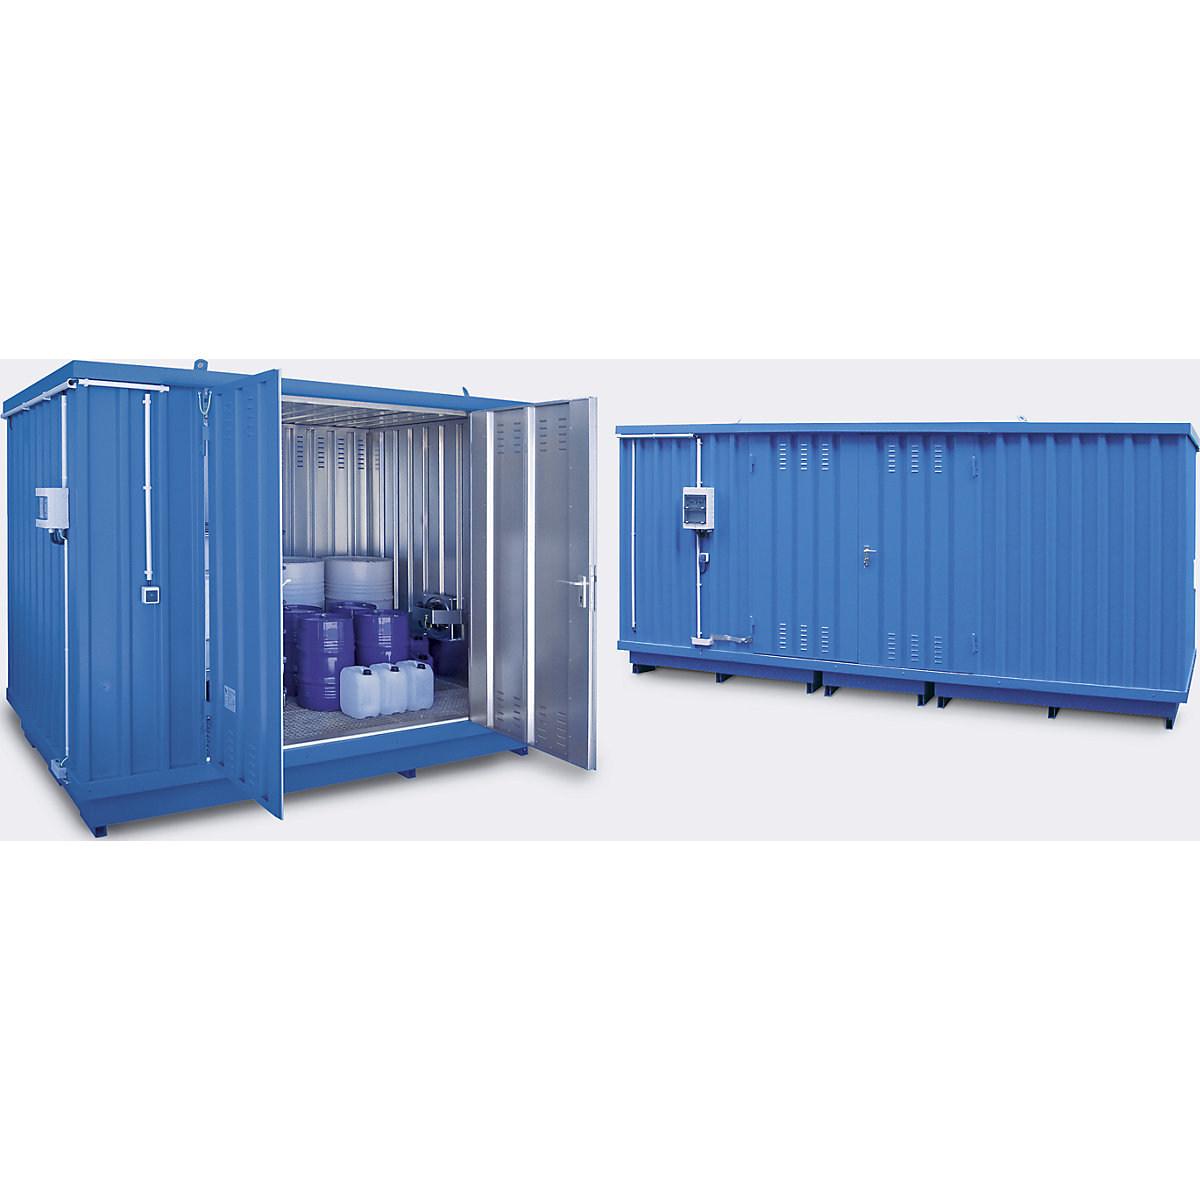 Container de depozitare pentru substanțe periculoase în vederea depozitării active a substanțelor inflamabile (Imagine produs 2)